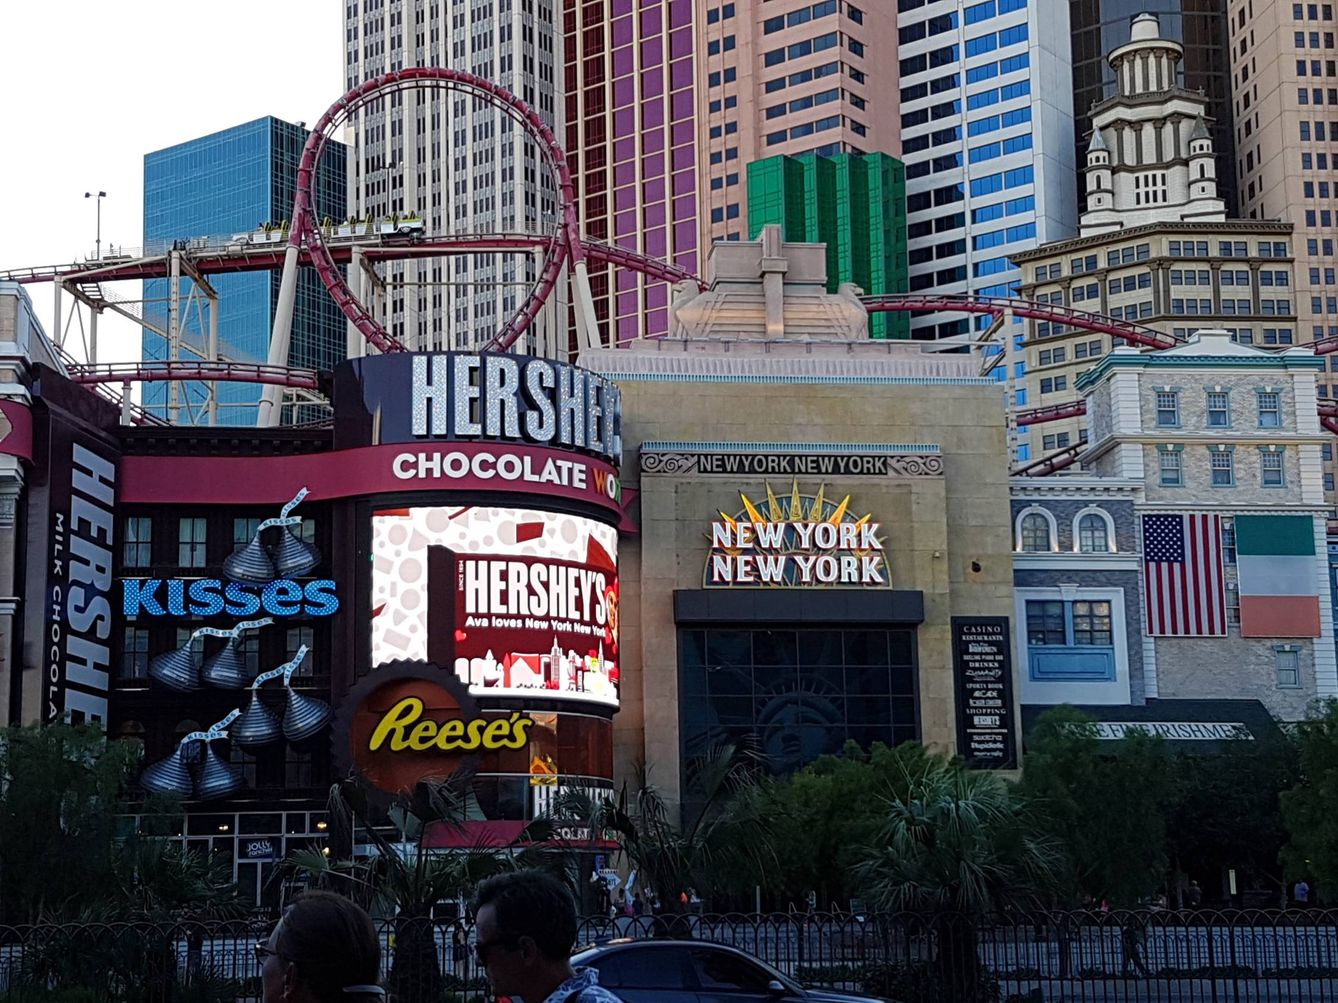 Los amantes del chocolate pueden encontrar su templo en Hershey's Chocolate World